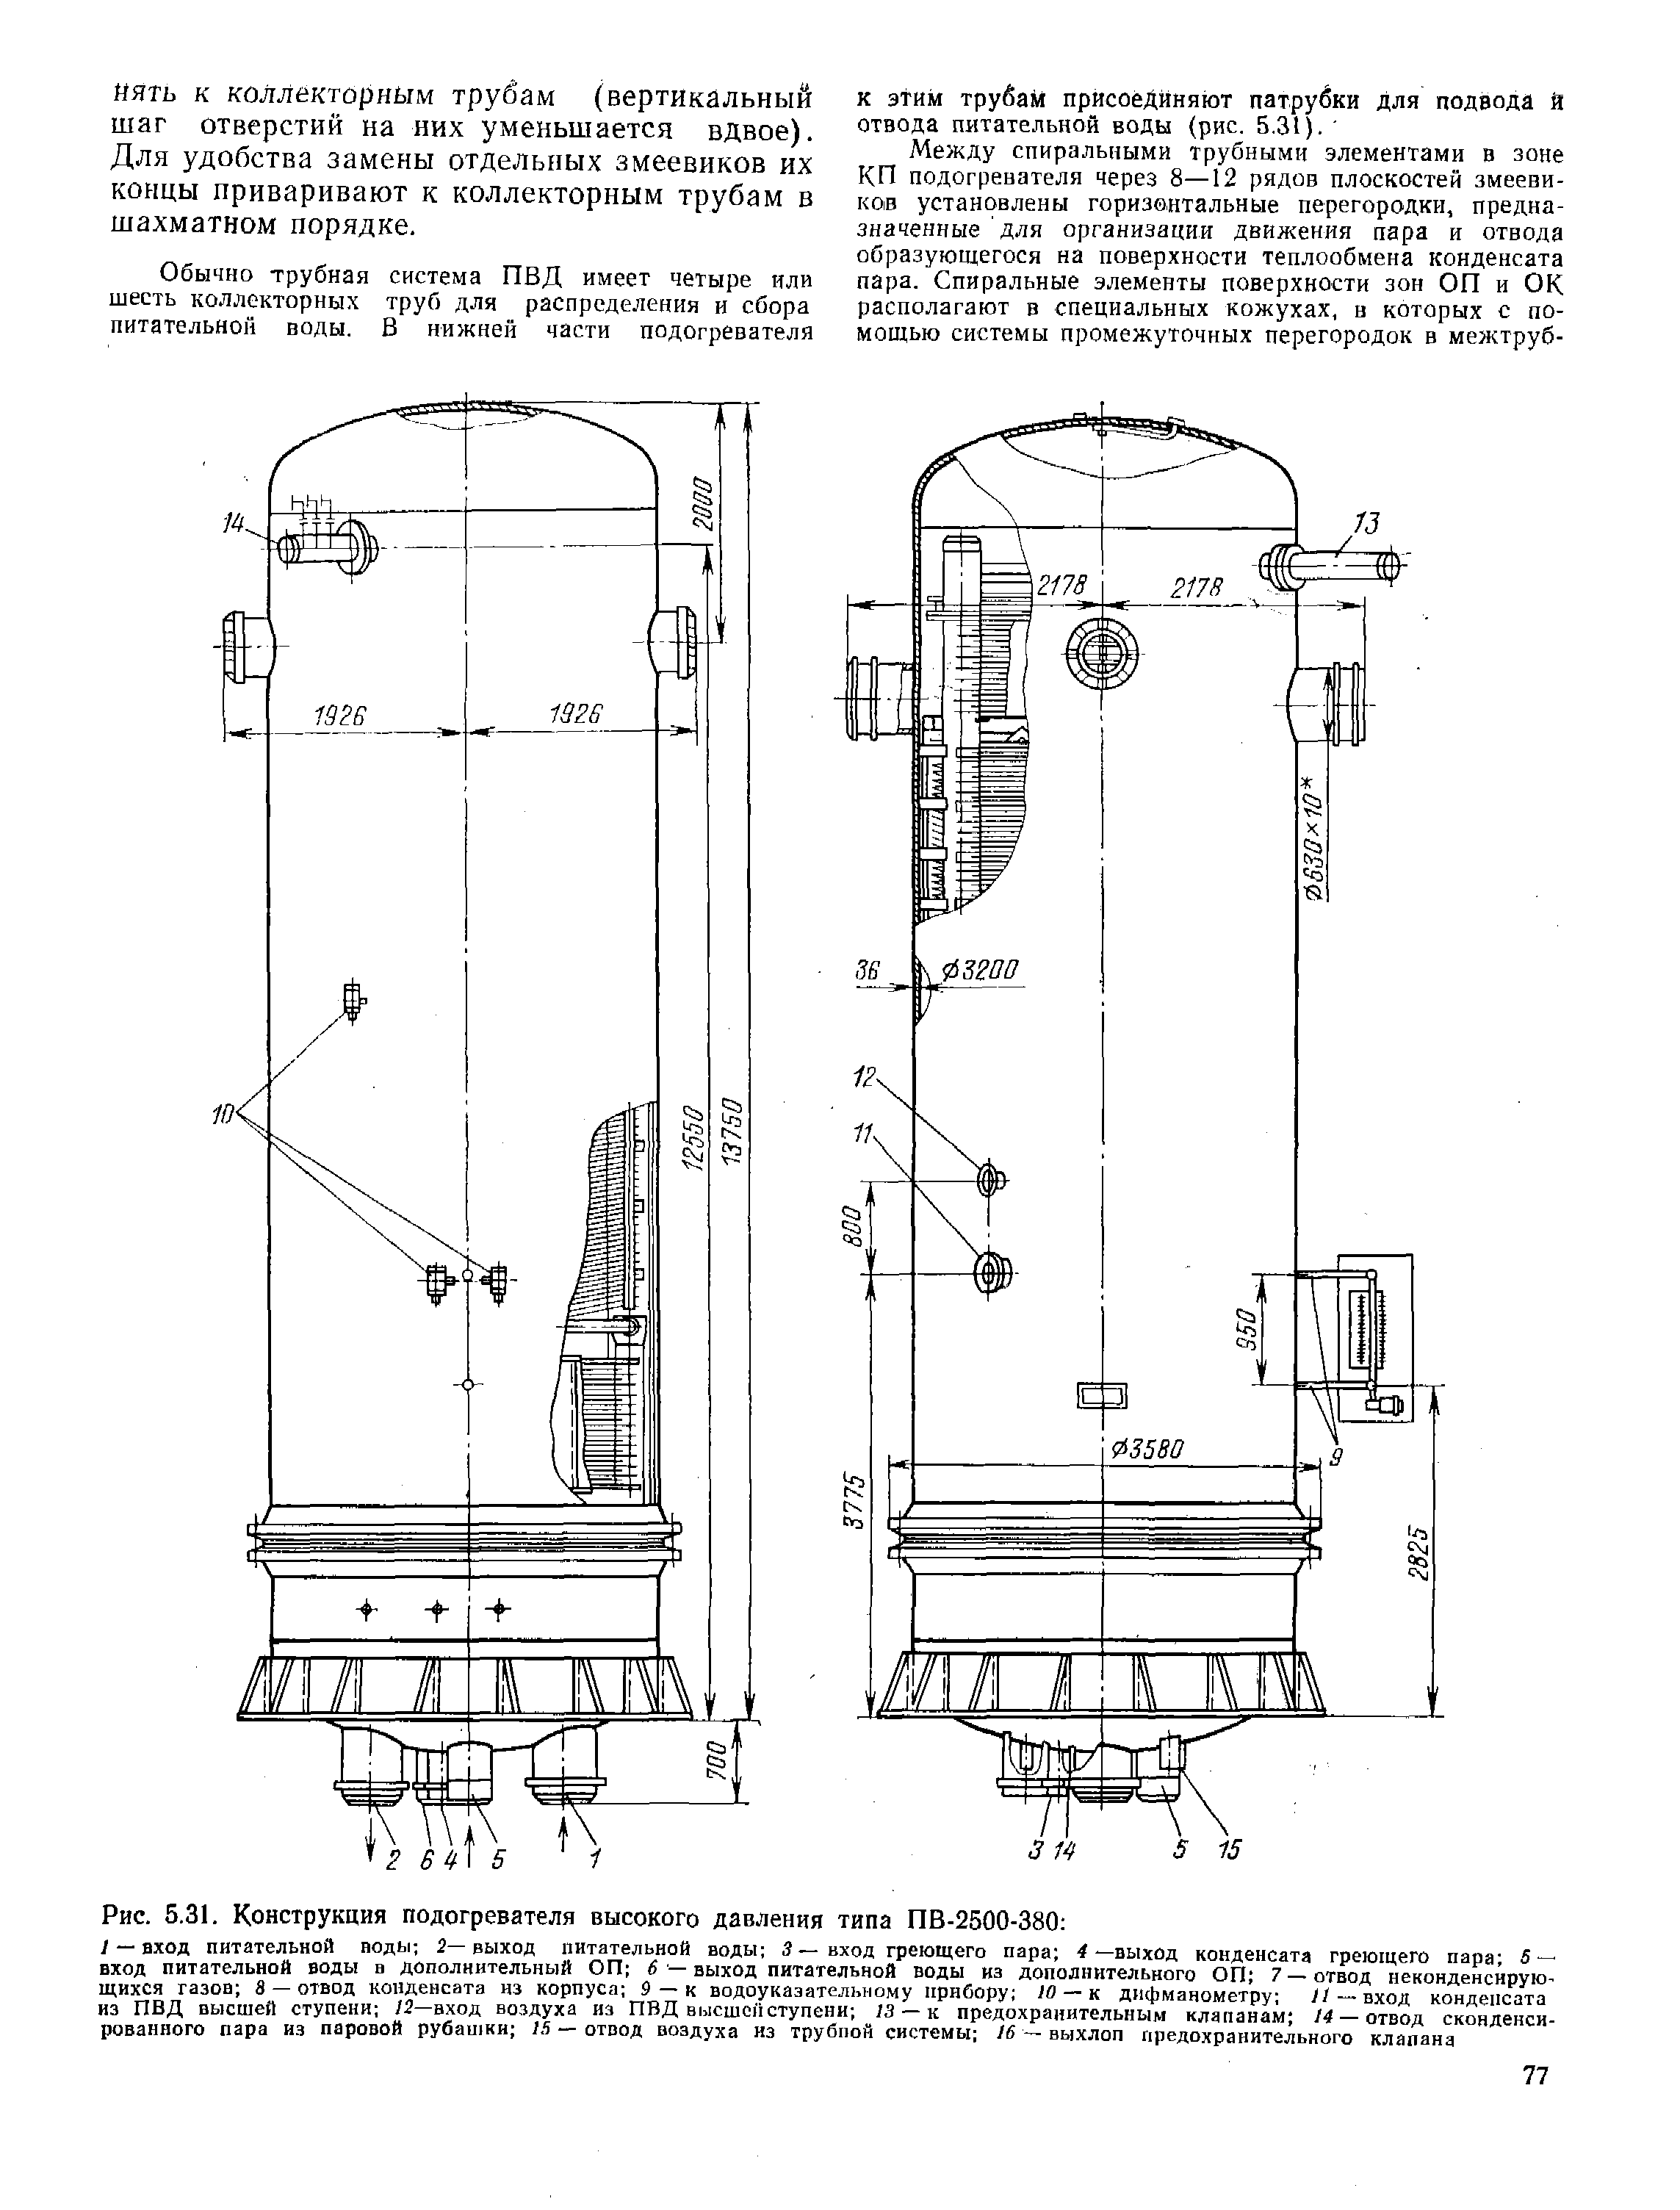 Рис. 5.31. Конструкция подогревателя высокого давления типа ПВ-2500-380 
